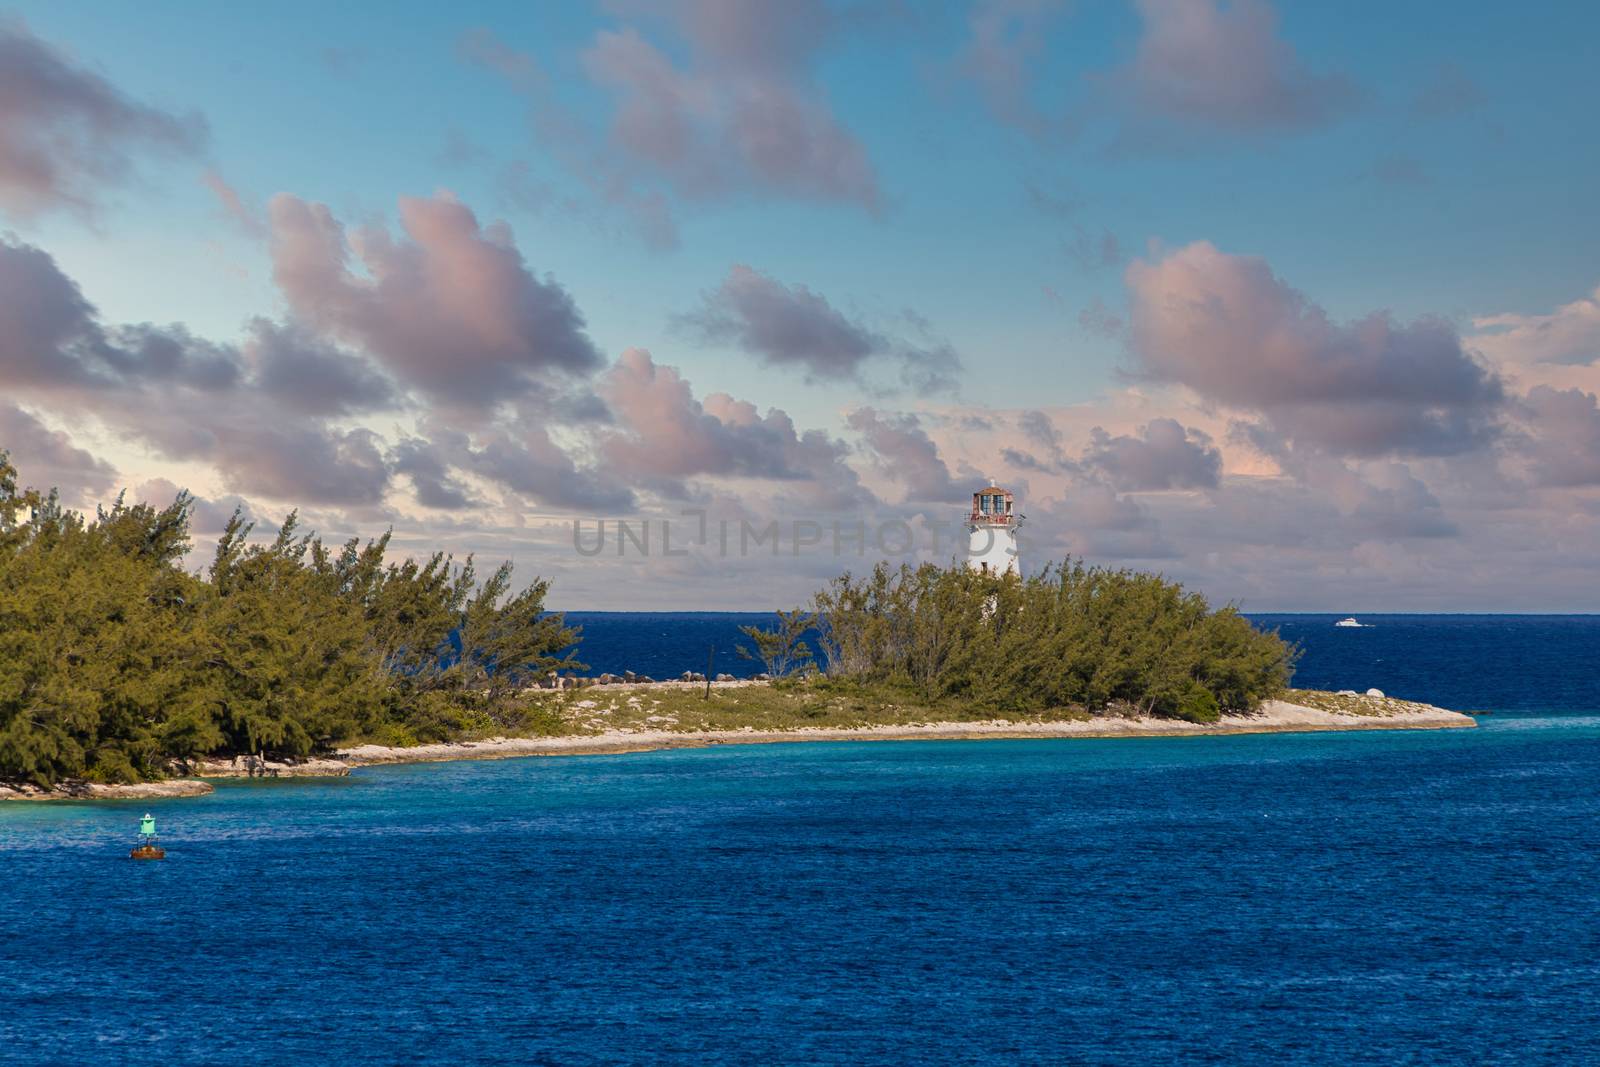 Lighthouse in Nassau by dbvirago